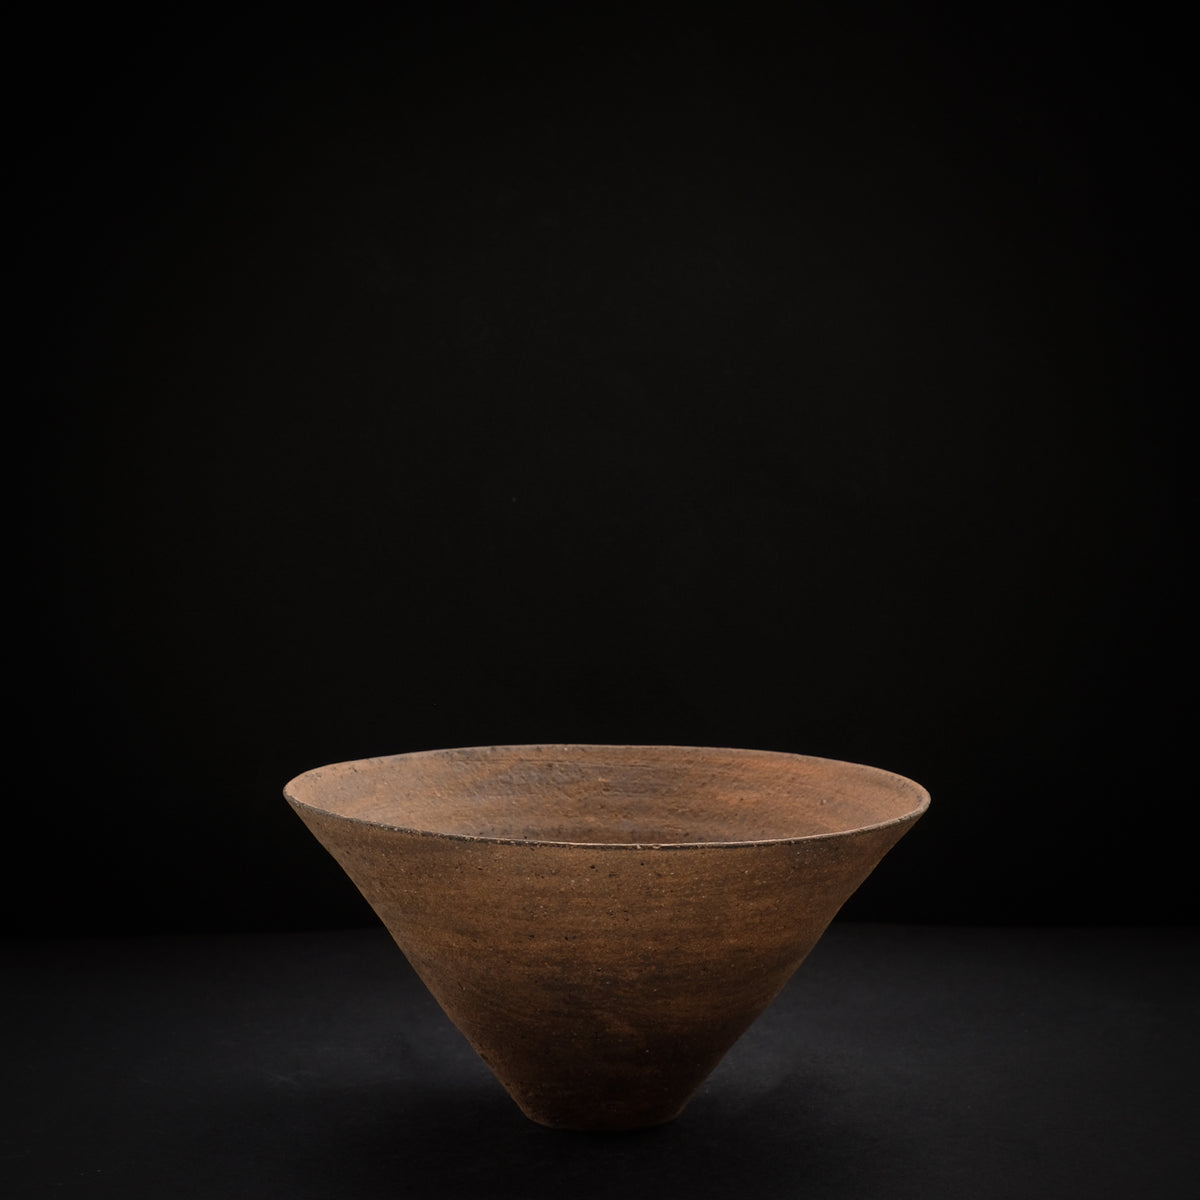 二階堂明弘 やきしめ三角碗 (φ14cm) Akihiro Nikaido Yakishime bowl